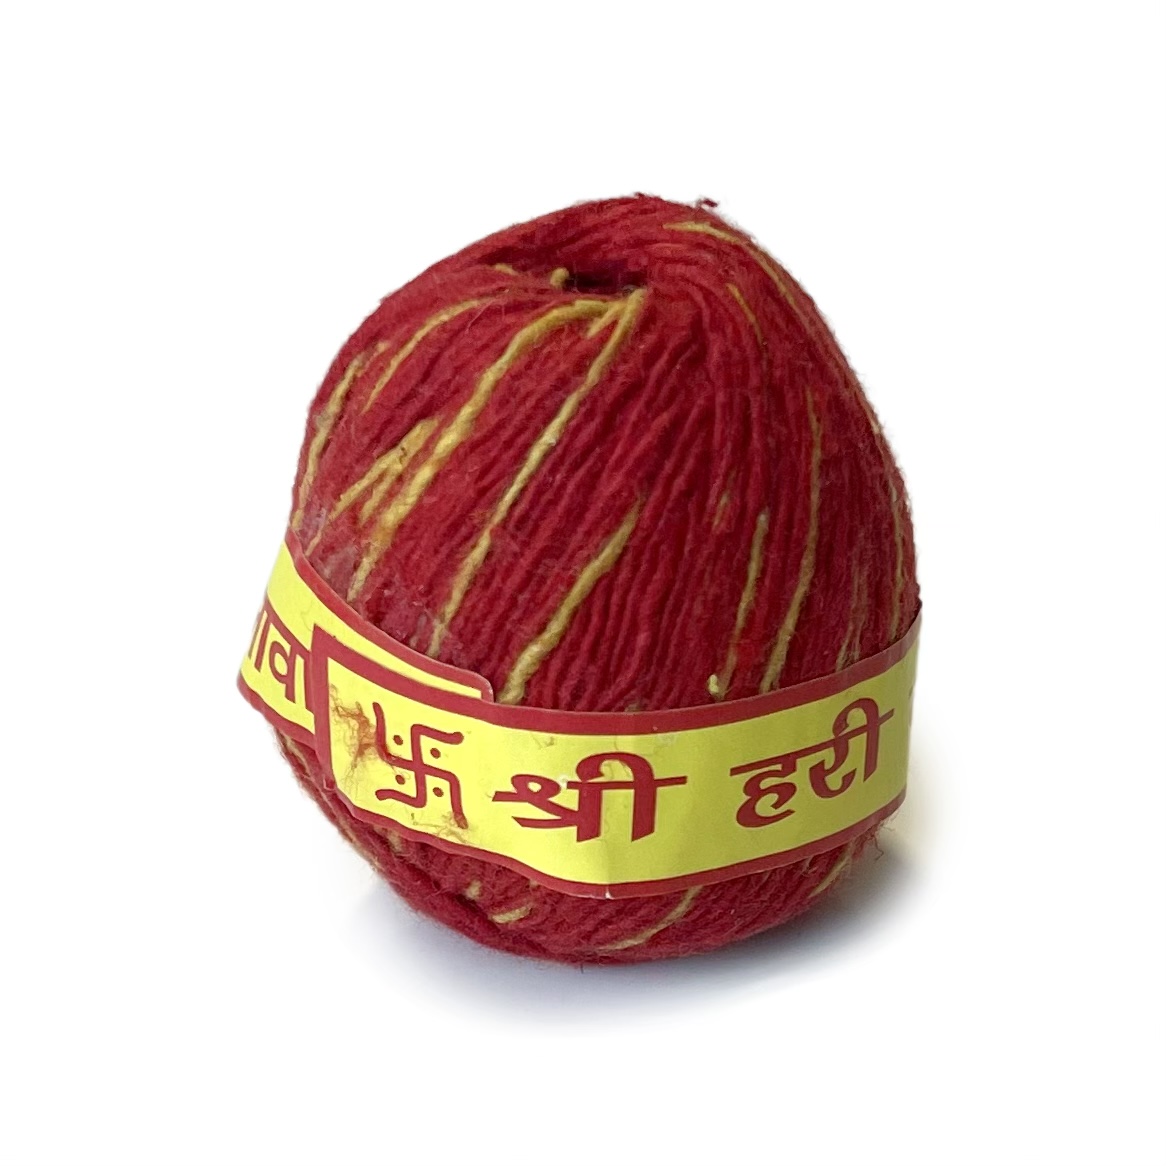 Хлопковая нить КАЛЕВА - Шри Хари Кришна Мангалакари Калава (красная и жёлтая, 100% хлопок, клубок 5*4 см.), 1 шт.